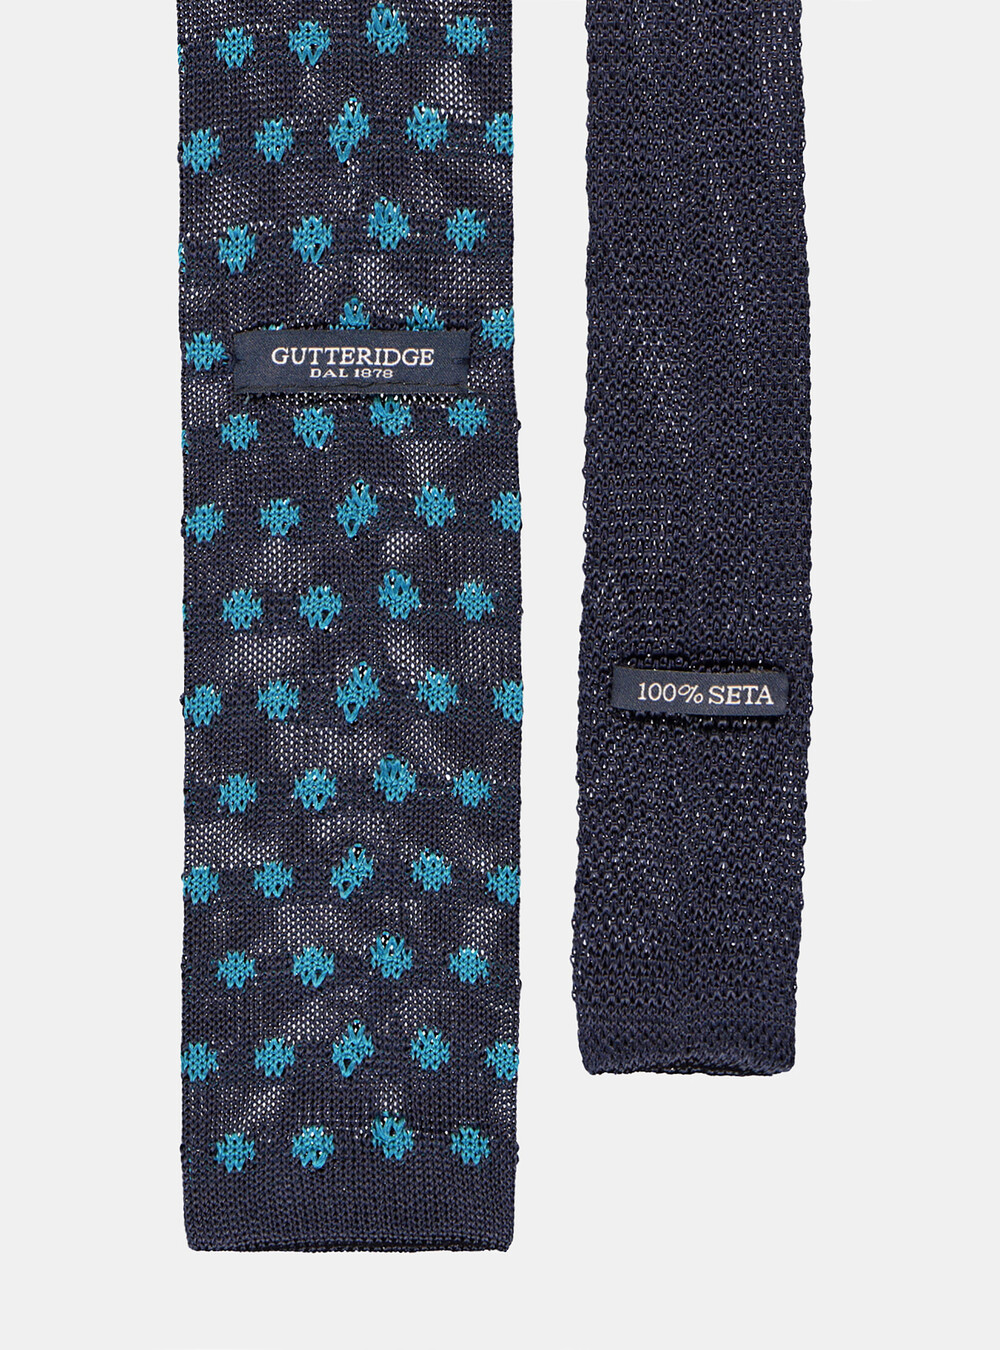 Cravatta in seta a maglia | Gutteridge | Cravatte Uomo